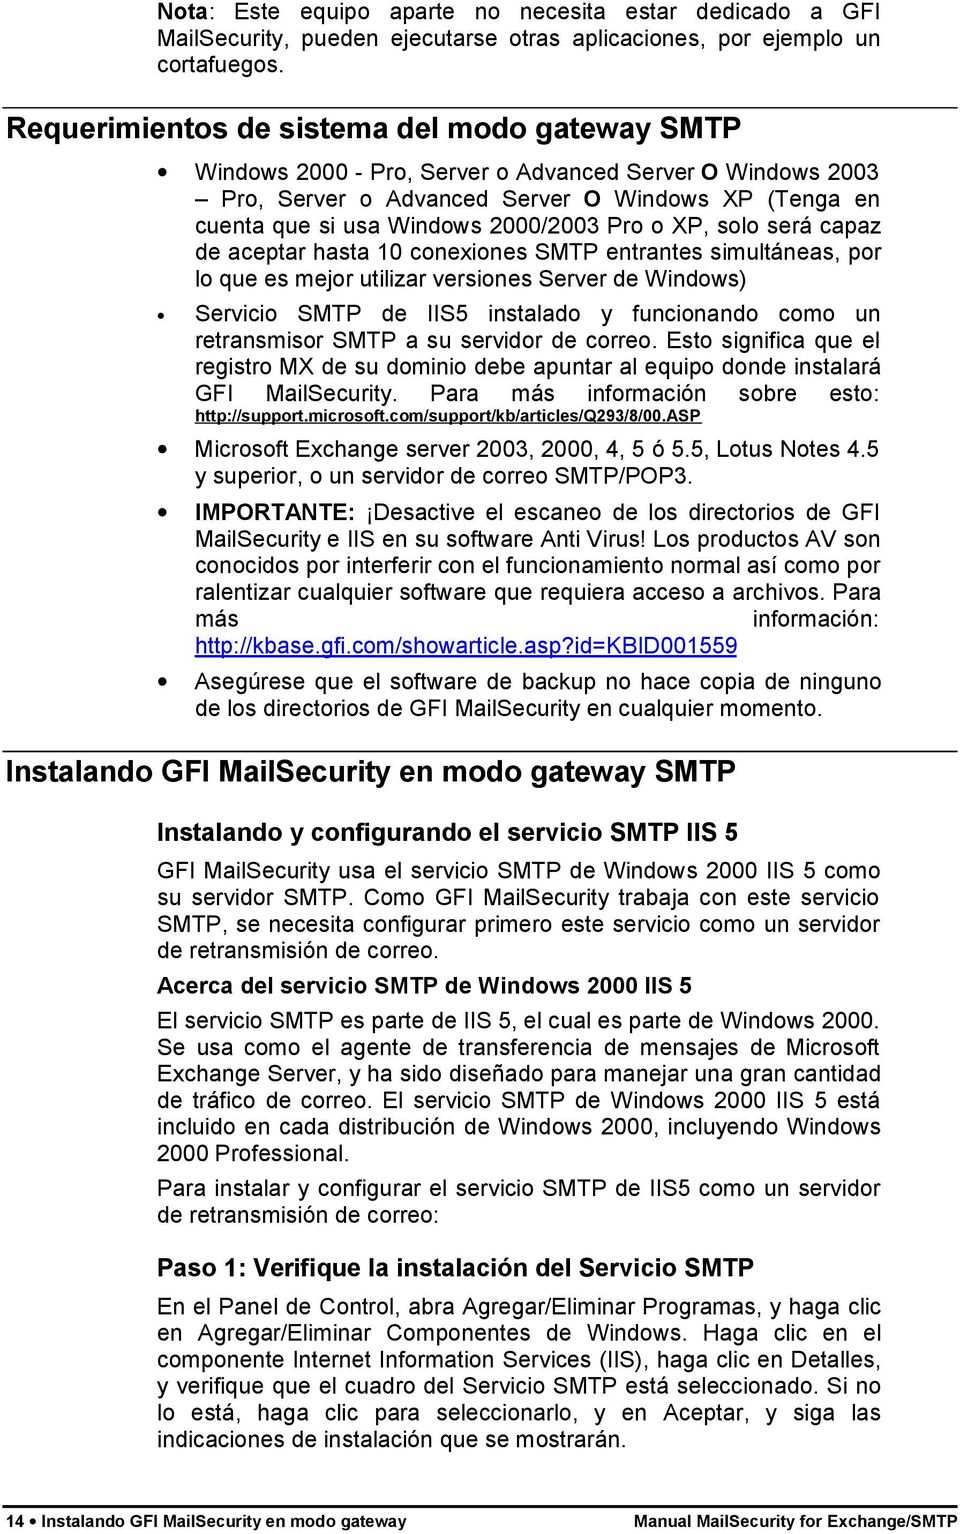 Pro o XP, solo será capaz de aceptar hasta 10 conexiones SMTP entrantes simultáneas, por lo que es mejor utilizar versiones Server de Windows) Servicio SMTP de IIS5 instalado y funcionando como un